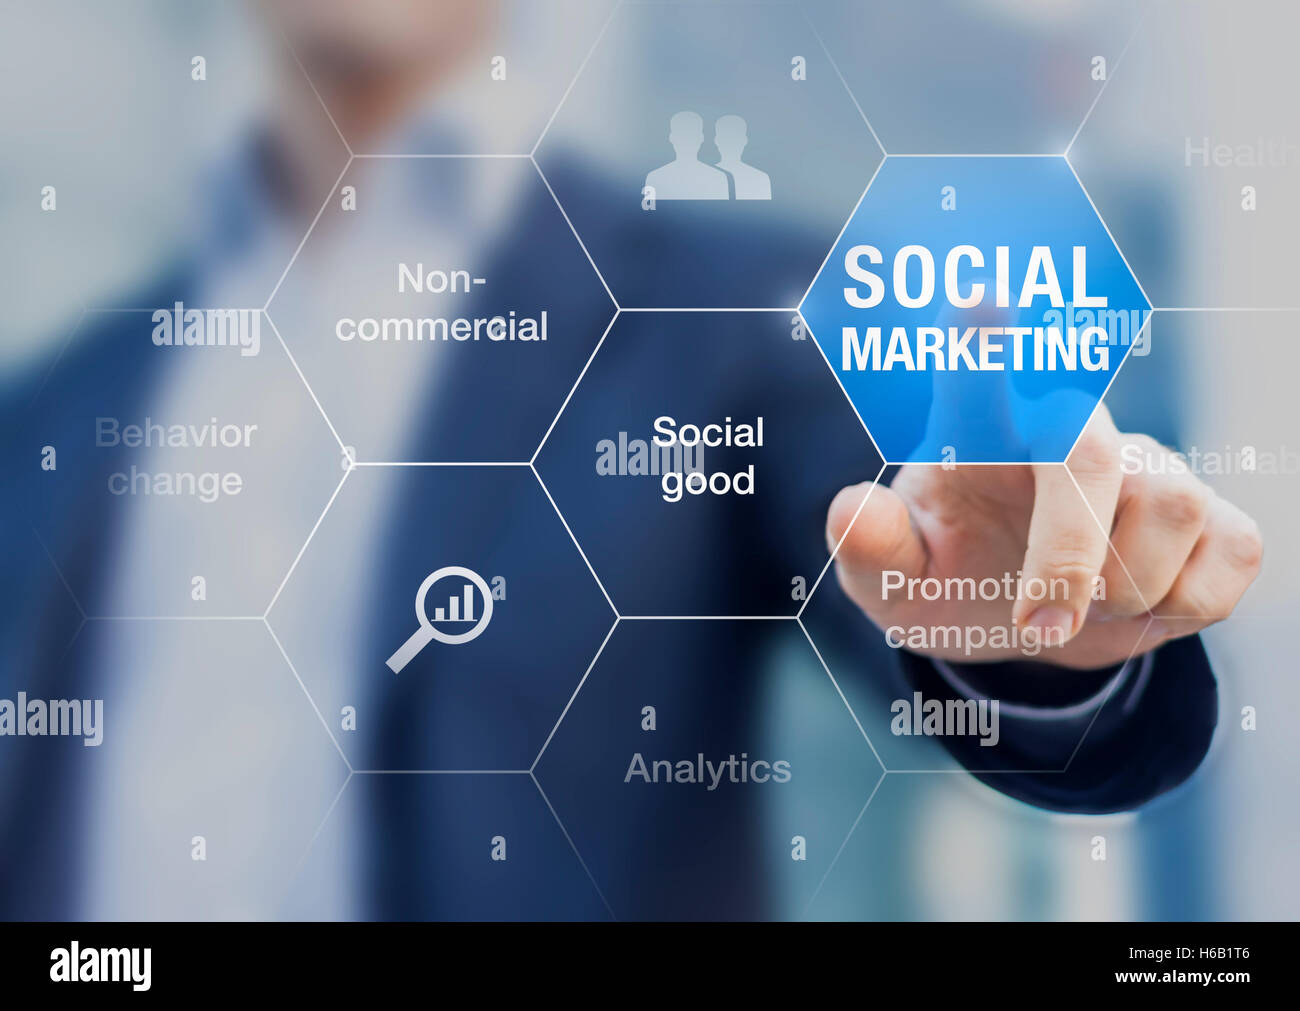 Présentation sur le concept de marketing social comme un outil pour améliorer le bien commun par le changement de comportement Banque D'Images